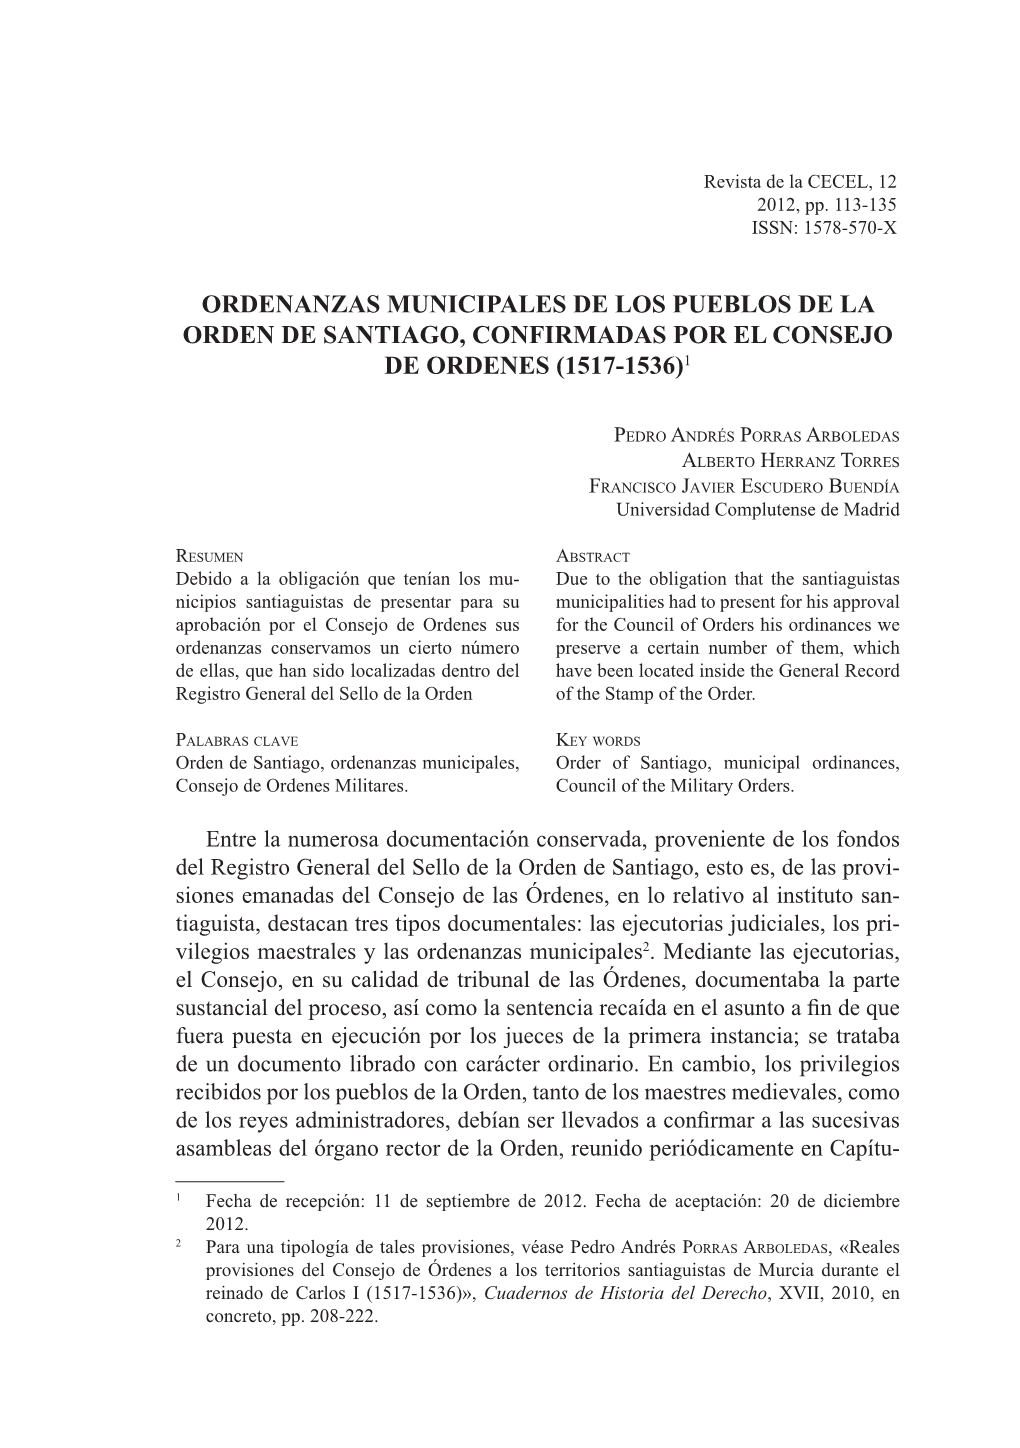 Ordenanzas Municipales De Los Pueblos De La Orden De Santiago, Confirmadas Por El Consejo De Ordenes (1517-1536)1